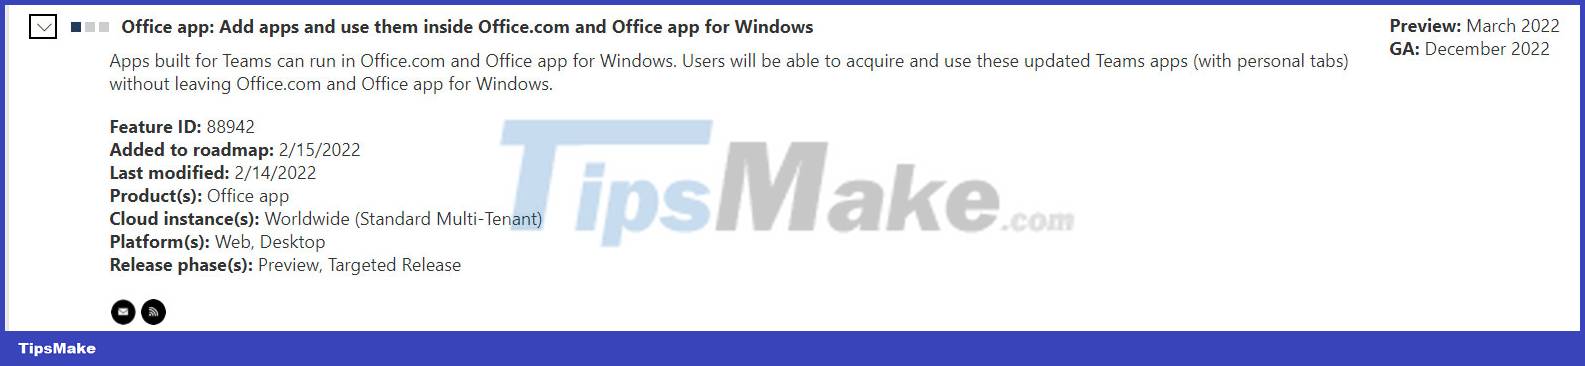 Microsoft Photo 1 integra las utilidades de Teams en el sitio web de Office.com y las aplicaciones de Office para Windows